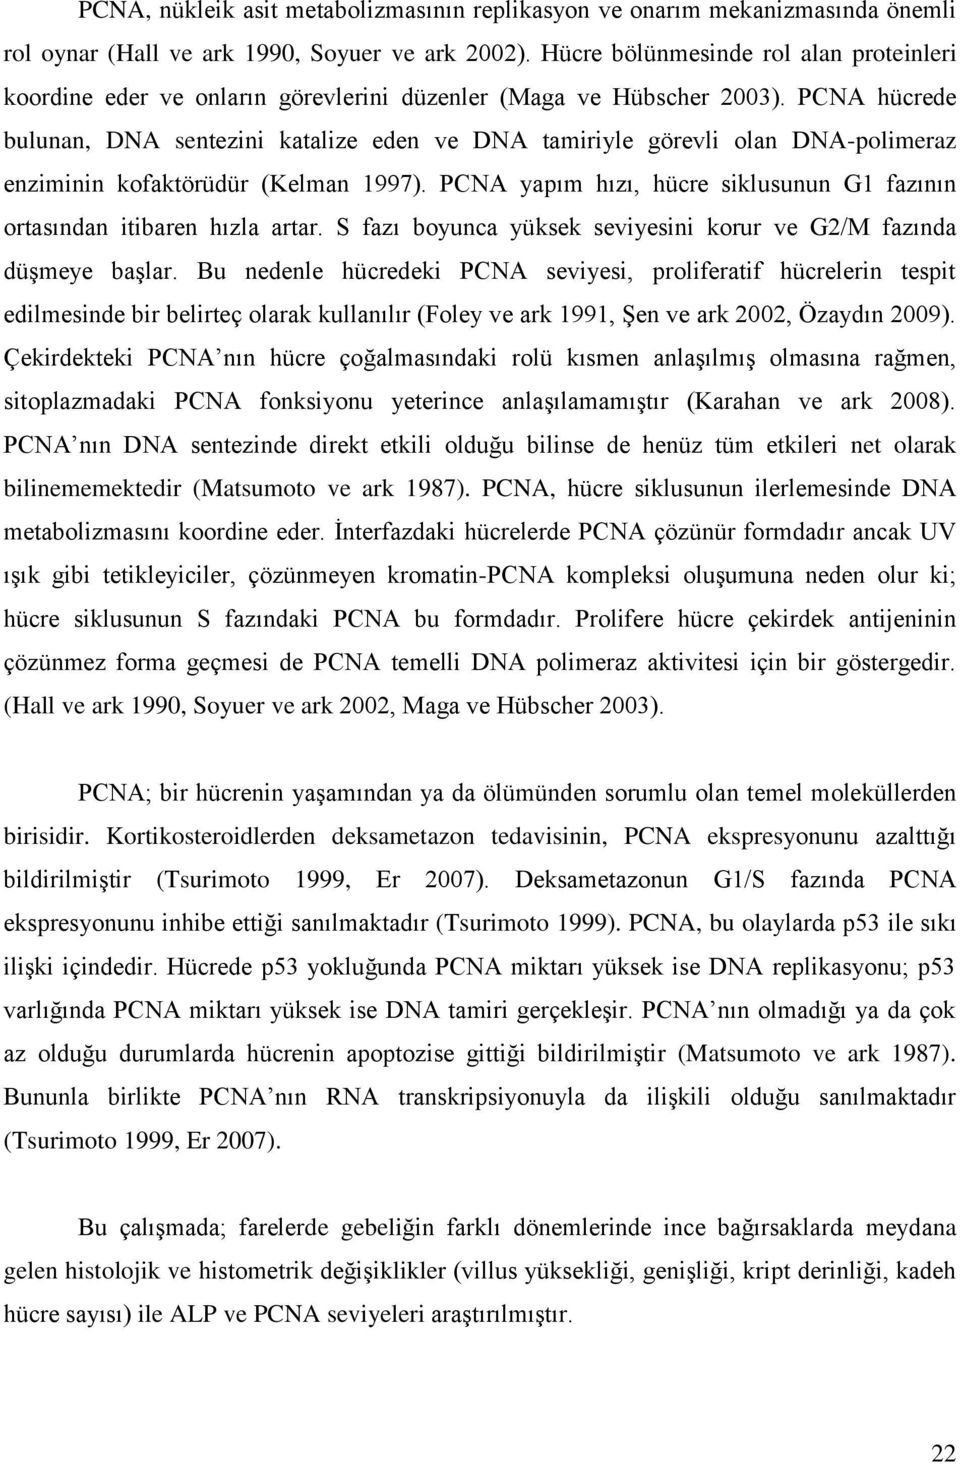 PCNA hücrede bulunan, DNA sentezini katalize eden ve DNA tamiriyle görevli olan DNA-polimeraz enziminin kofaktörüdür (Kelman 1997).